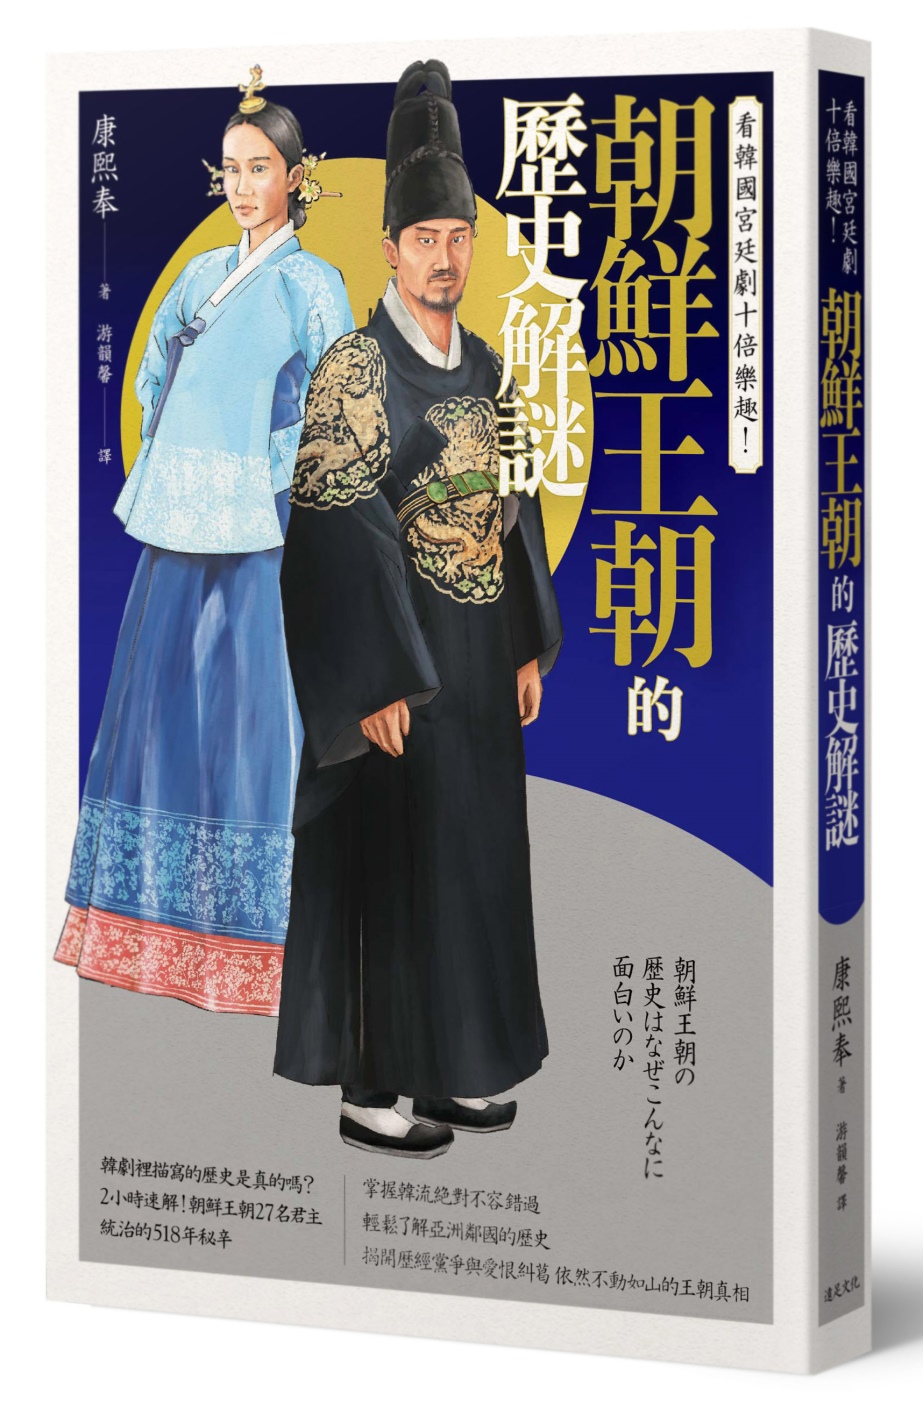 看韓國宮廷劇十倍樂趣!朝鮮王朝的歷史解謎